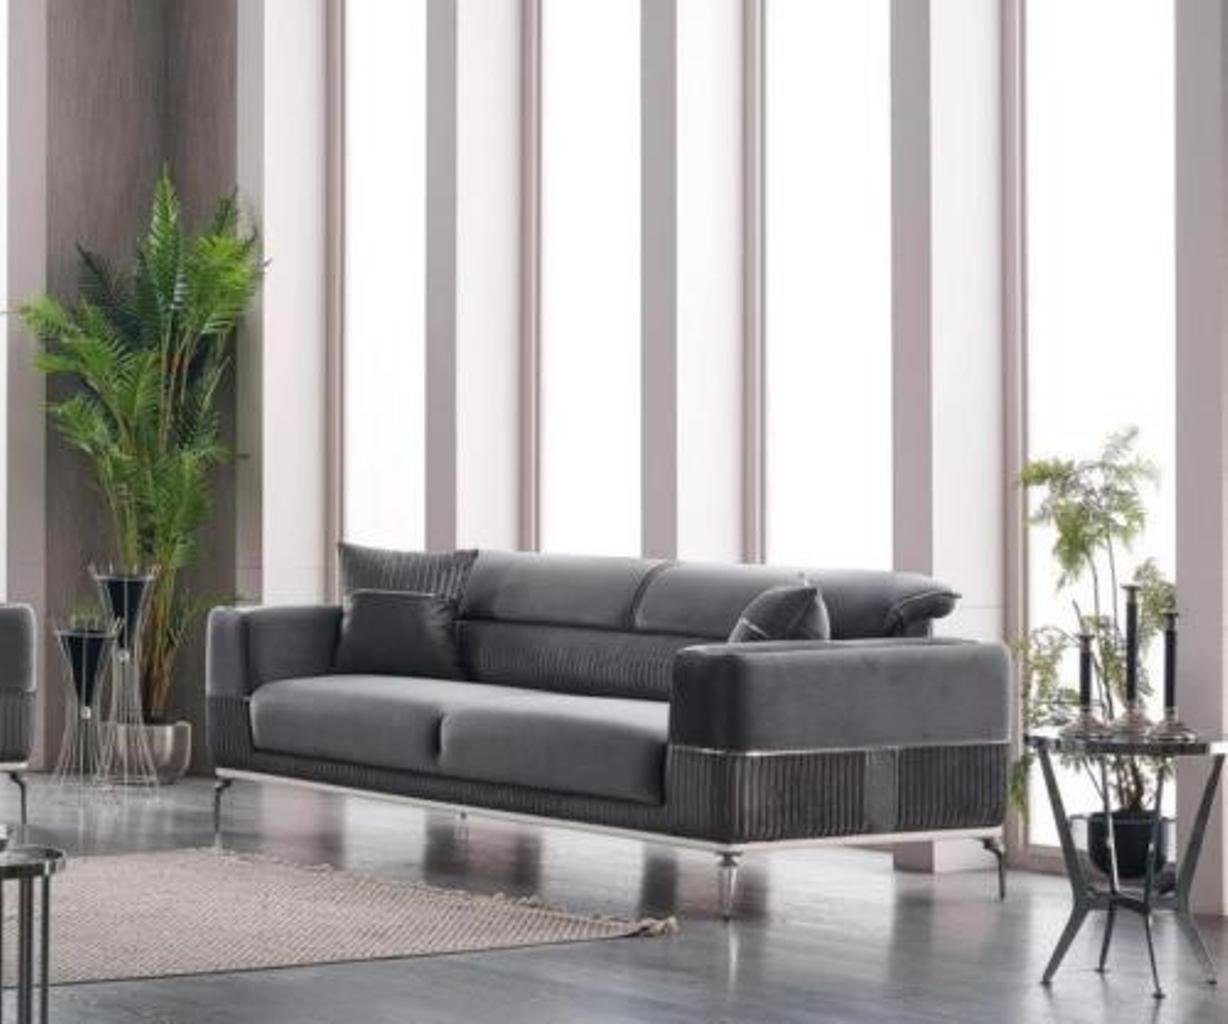 JVmoebel 3-Sitzer Grau Sofa 3 Sitz Dreisitzer Couch Grau Möbel Polster Textil Samt, 1 Teile, Made in Europa